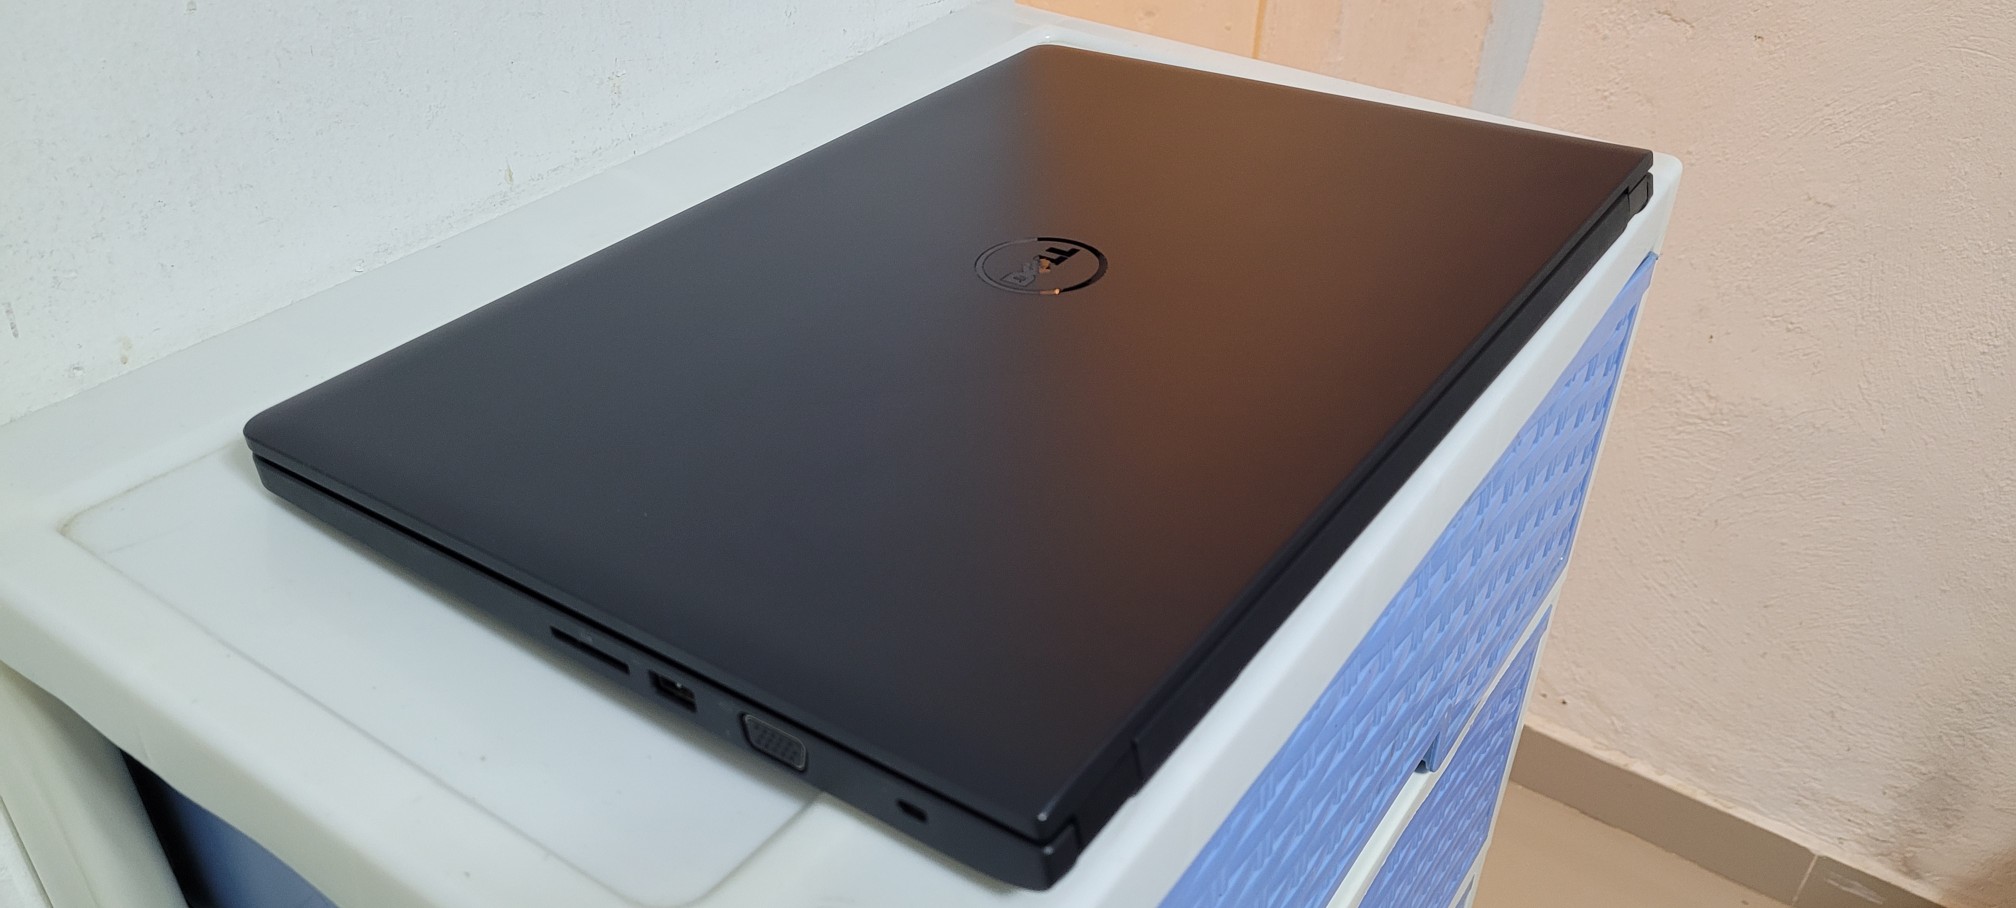 computadoras y laptops - Dell 17 Pulg Core i5 6ta Gen Ram 8gb ddr4 Disco 500gb SSD Teclado numerico 2